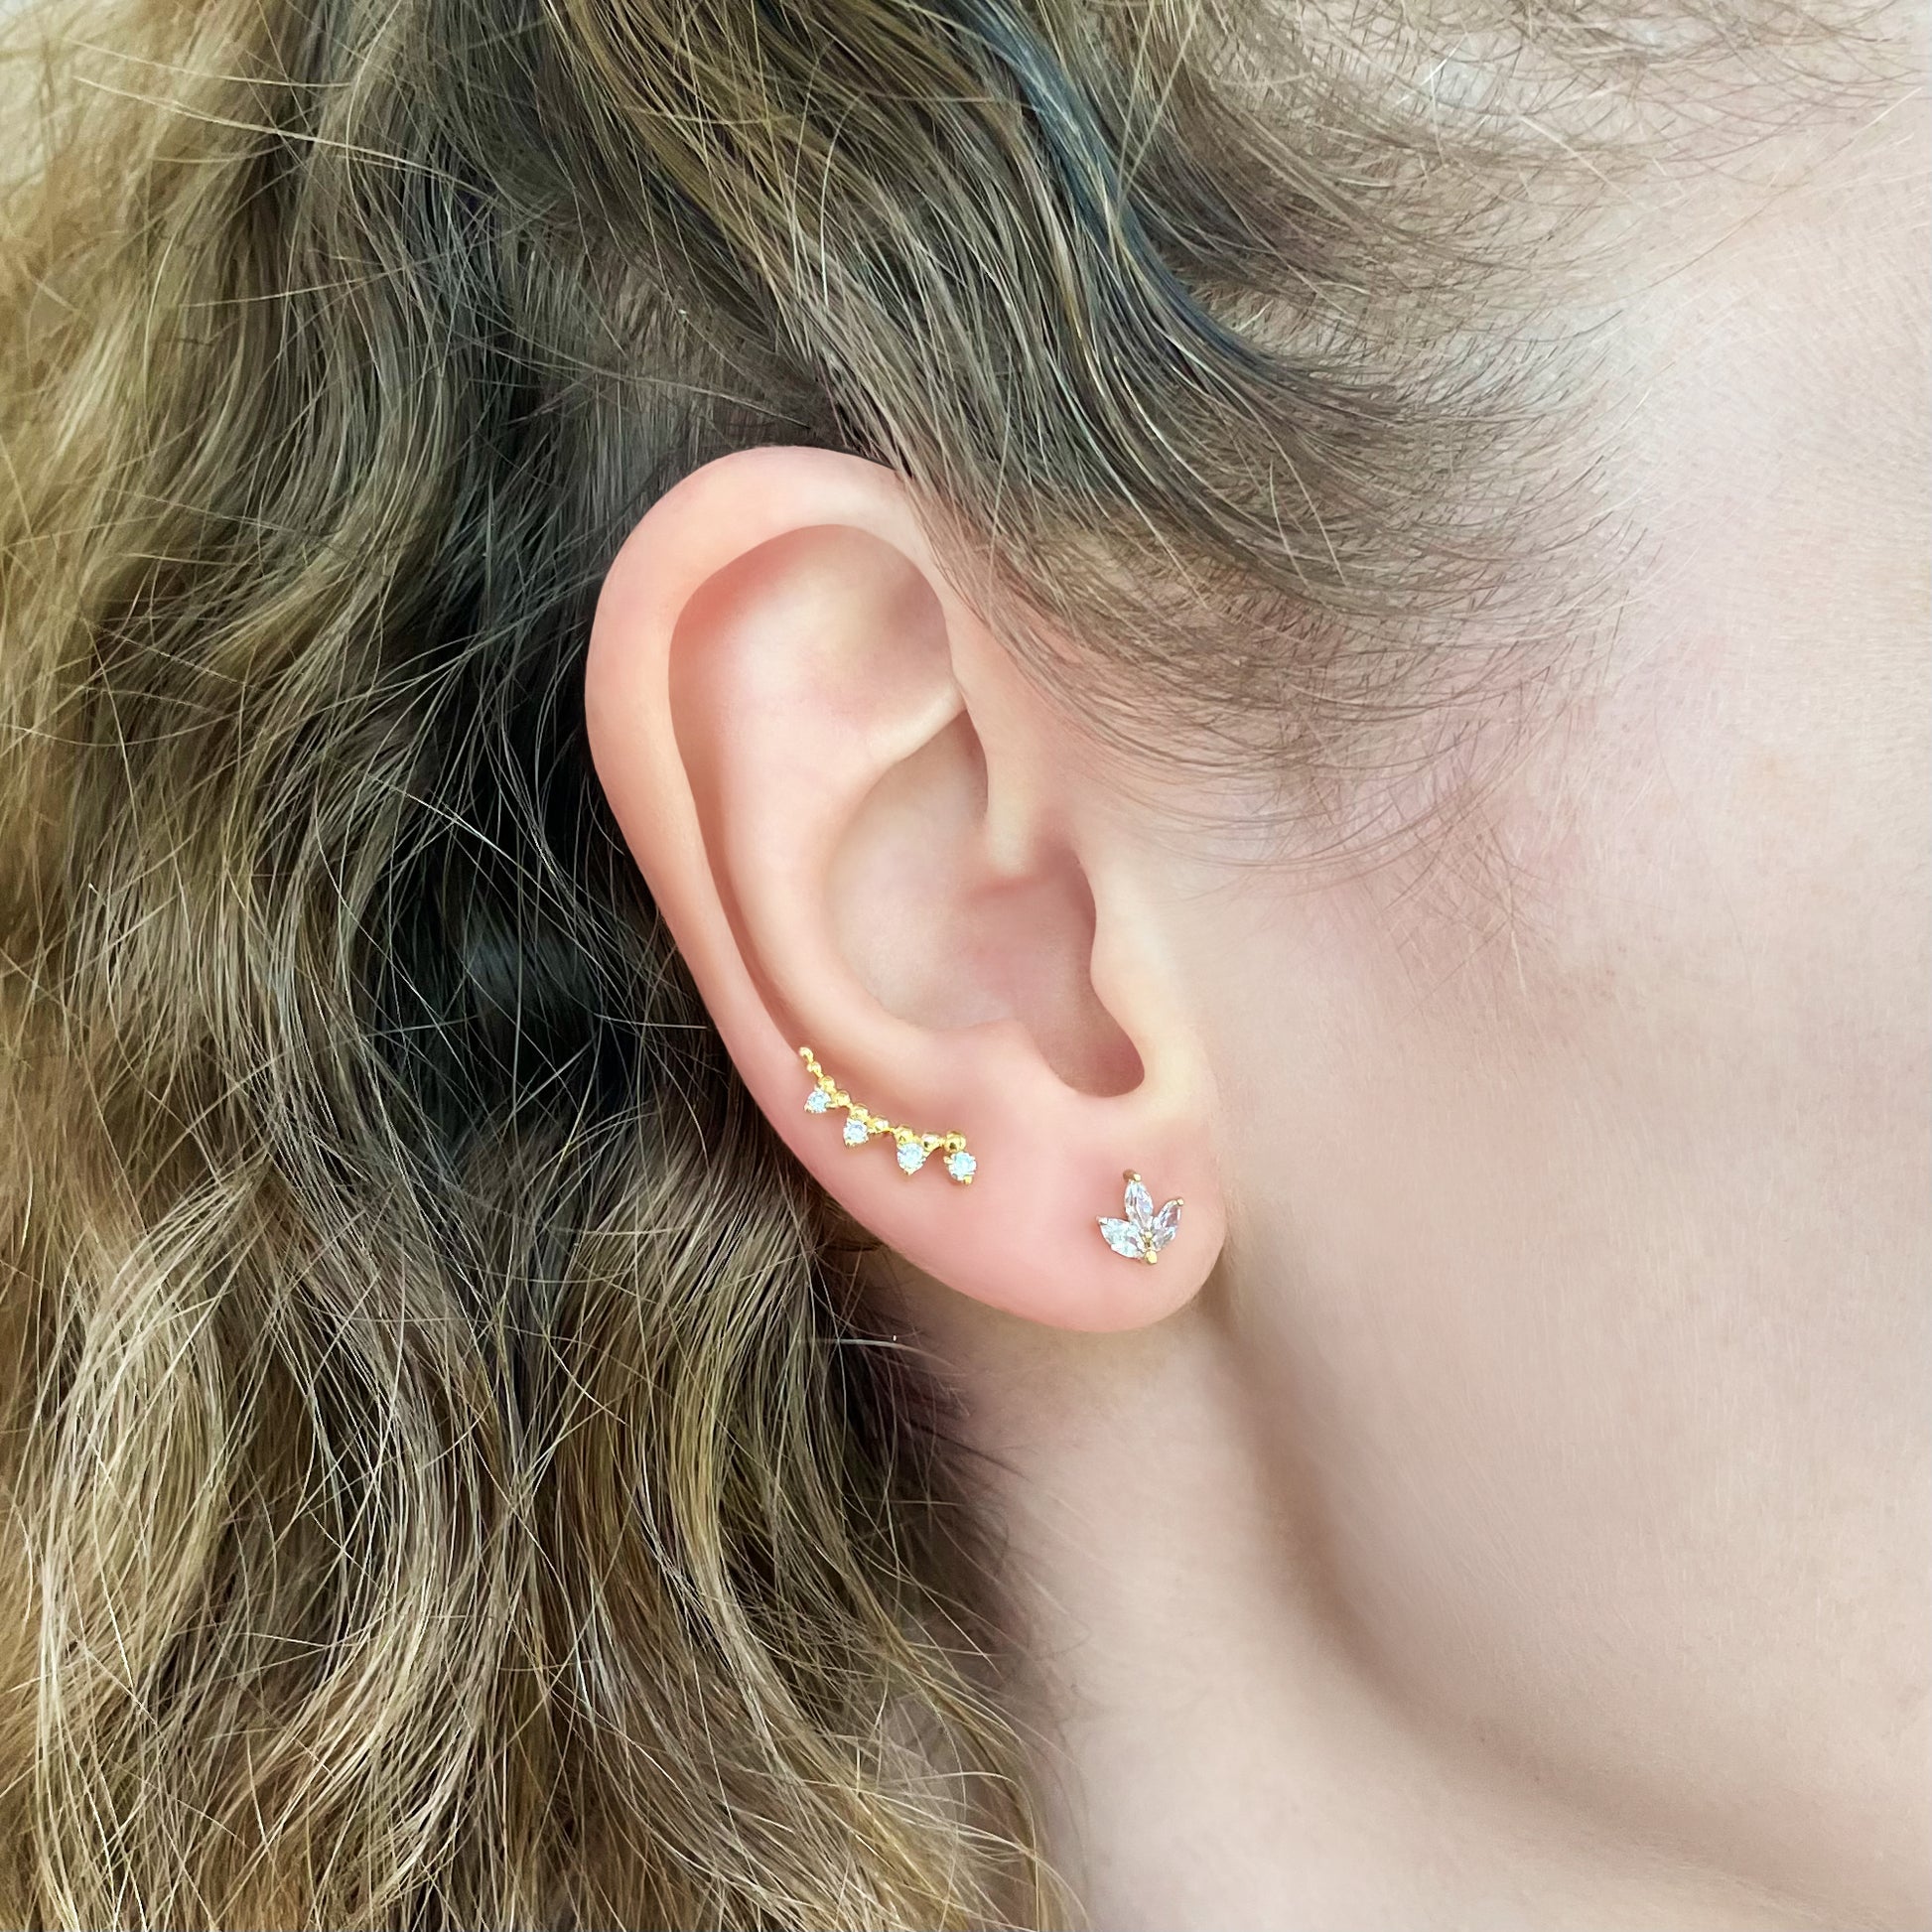 4 Diamonds Ear Climber Stud Earrings - - Jewelry - Goldie Paris Jewelry - Earring